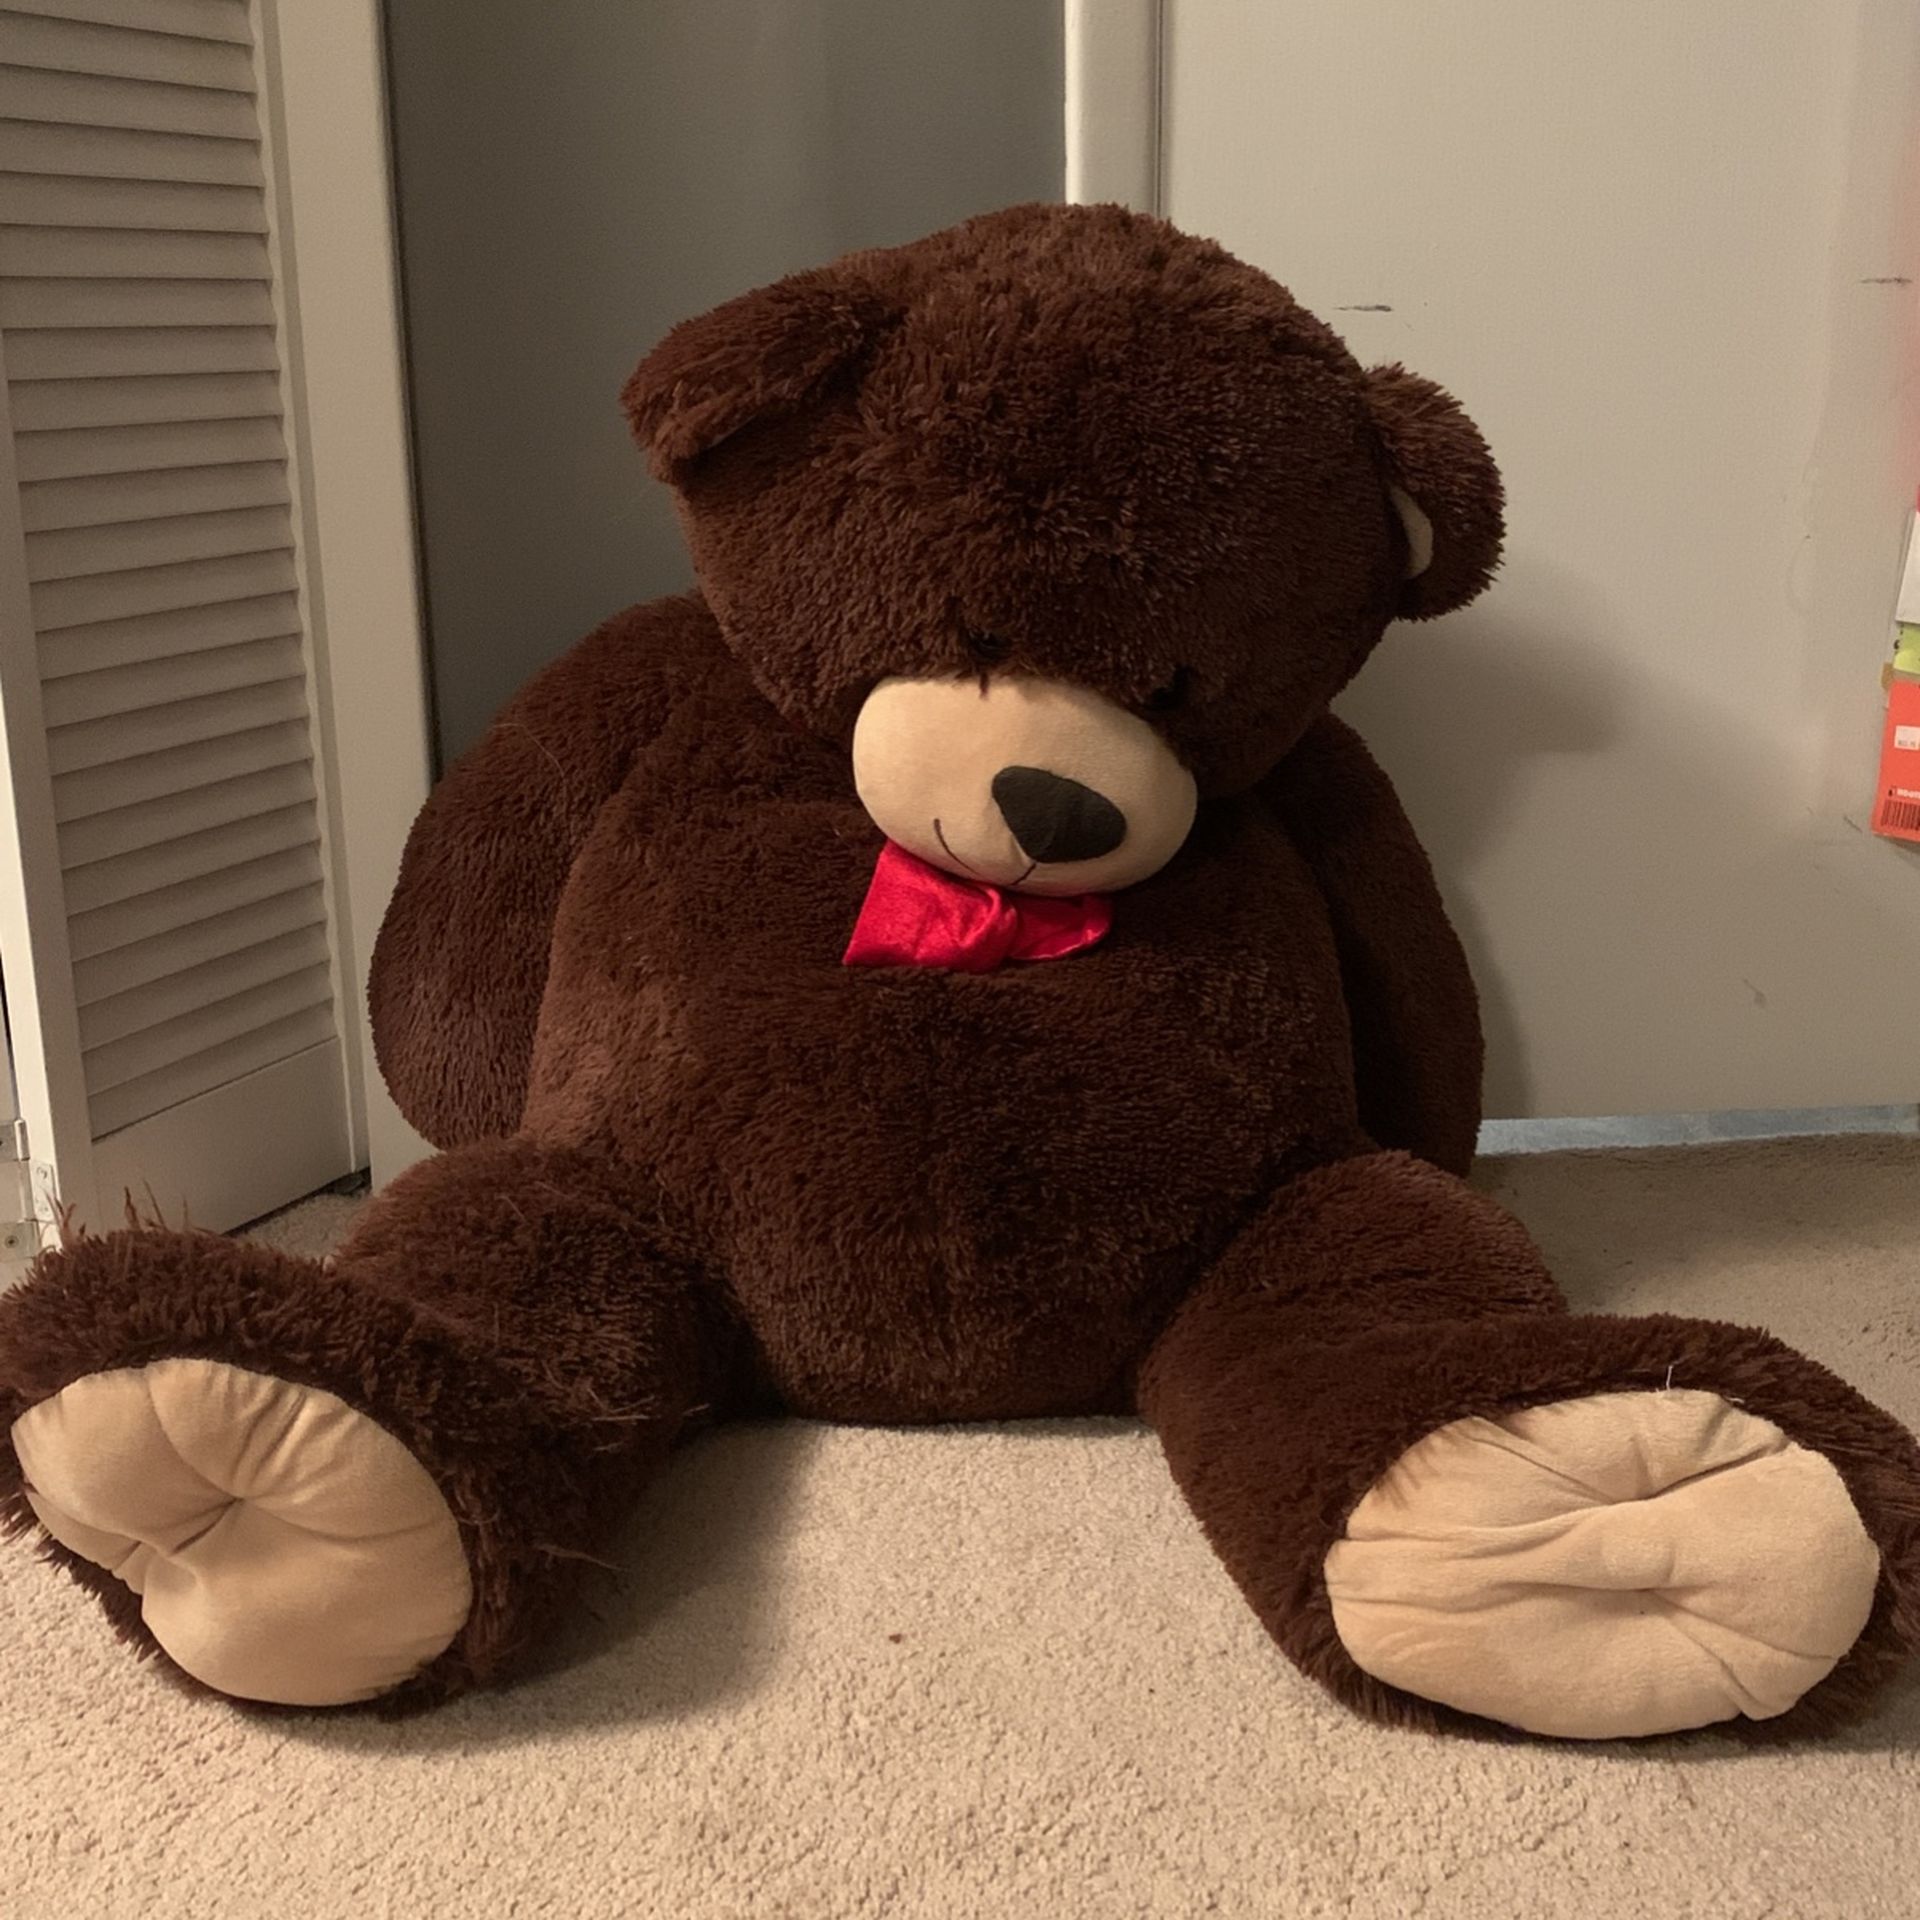 Giant Teddy bear